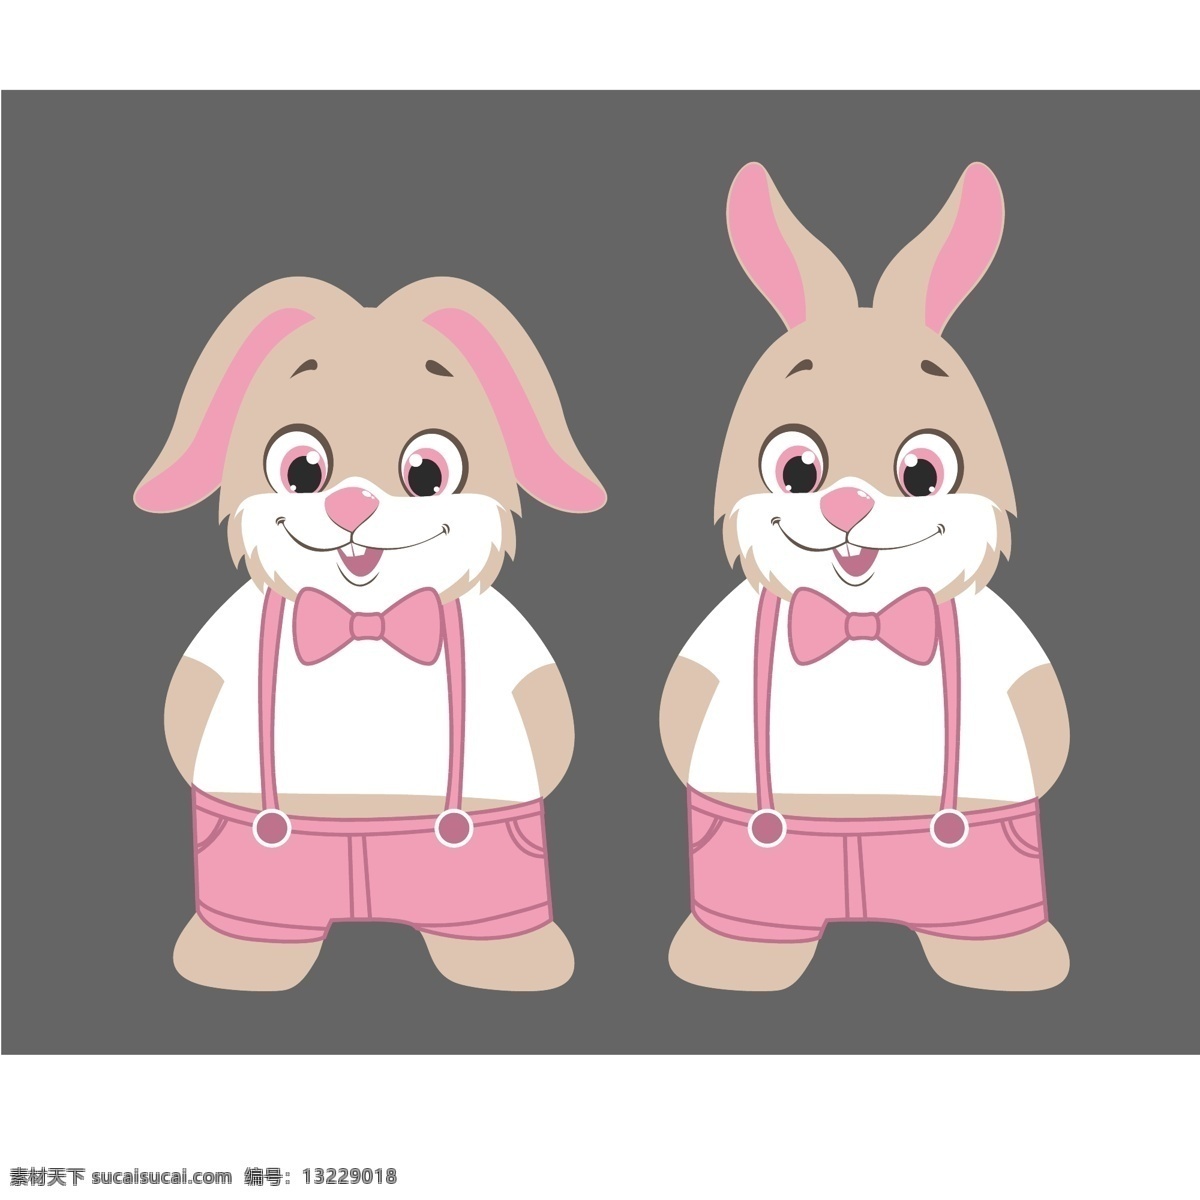 可爱兔子图片 可爱 折耳兔 粉色兔子 背带裤兔子 蝴蝶结兔子 动漫动画 风景漫画